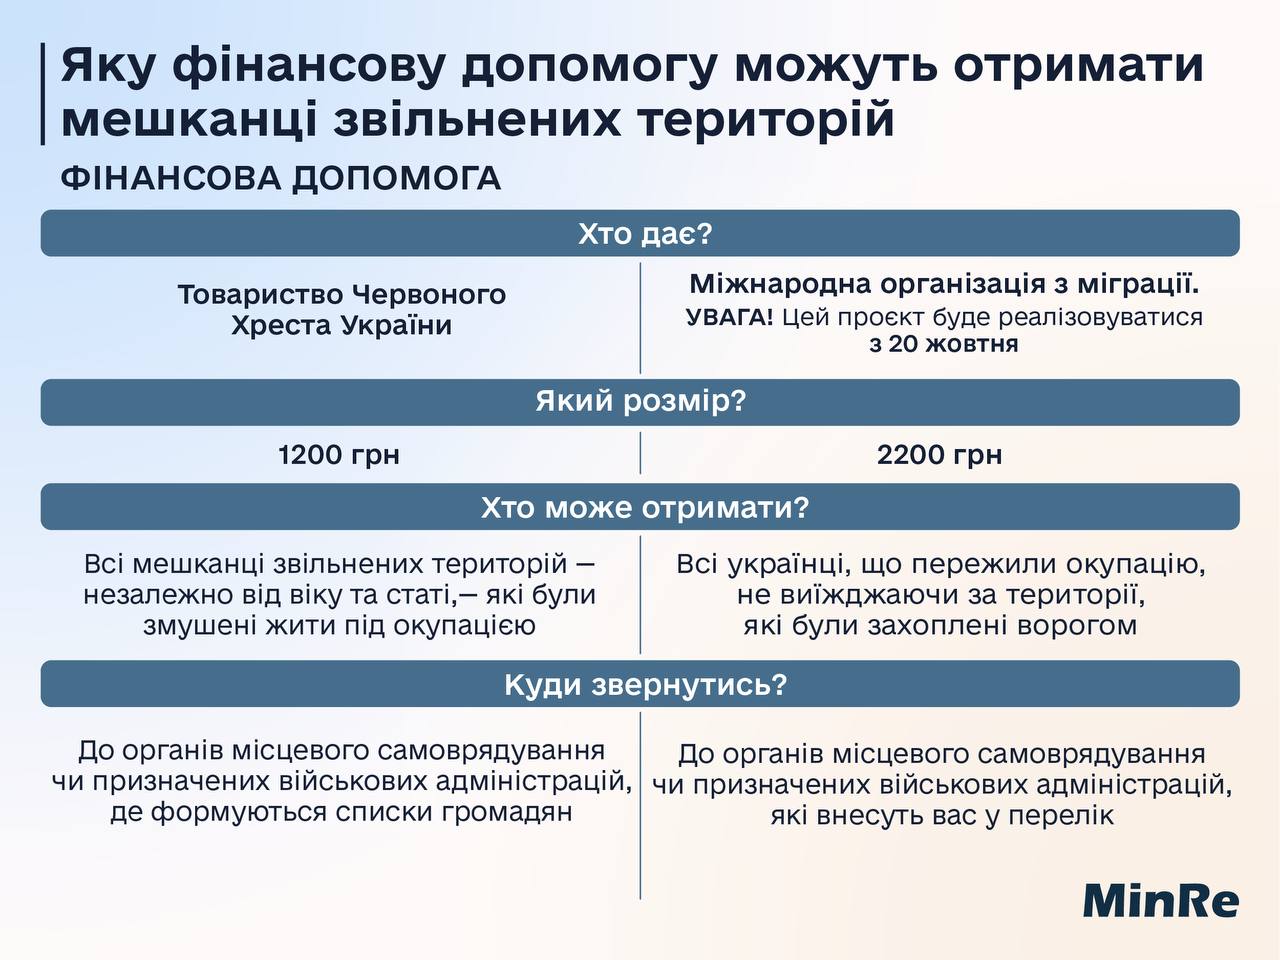 Українцям з 20 жовтня почнуть виплачувати нову допомогу: хто зможе отримати 2200 грн